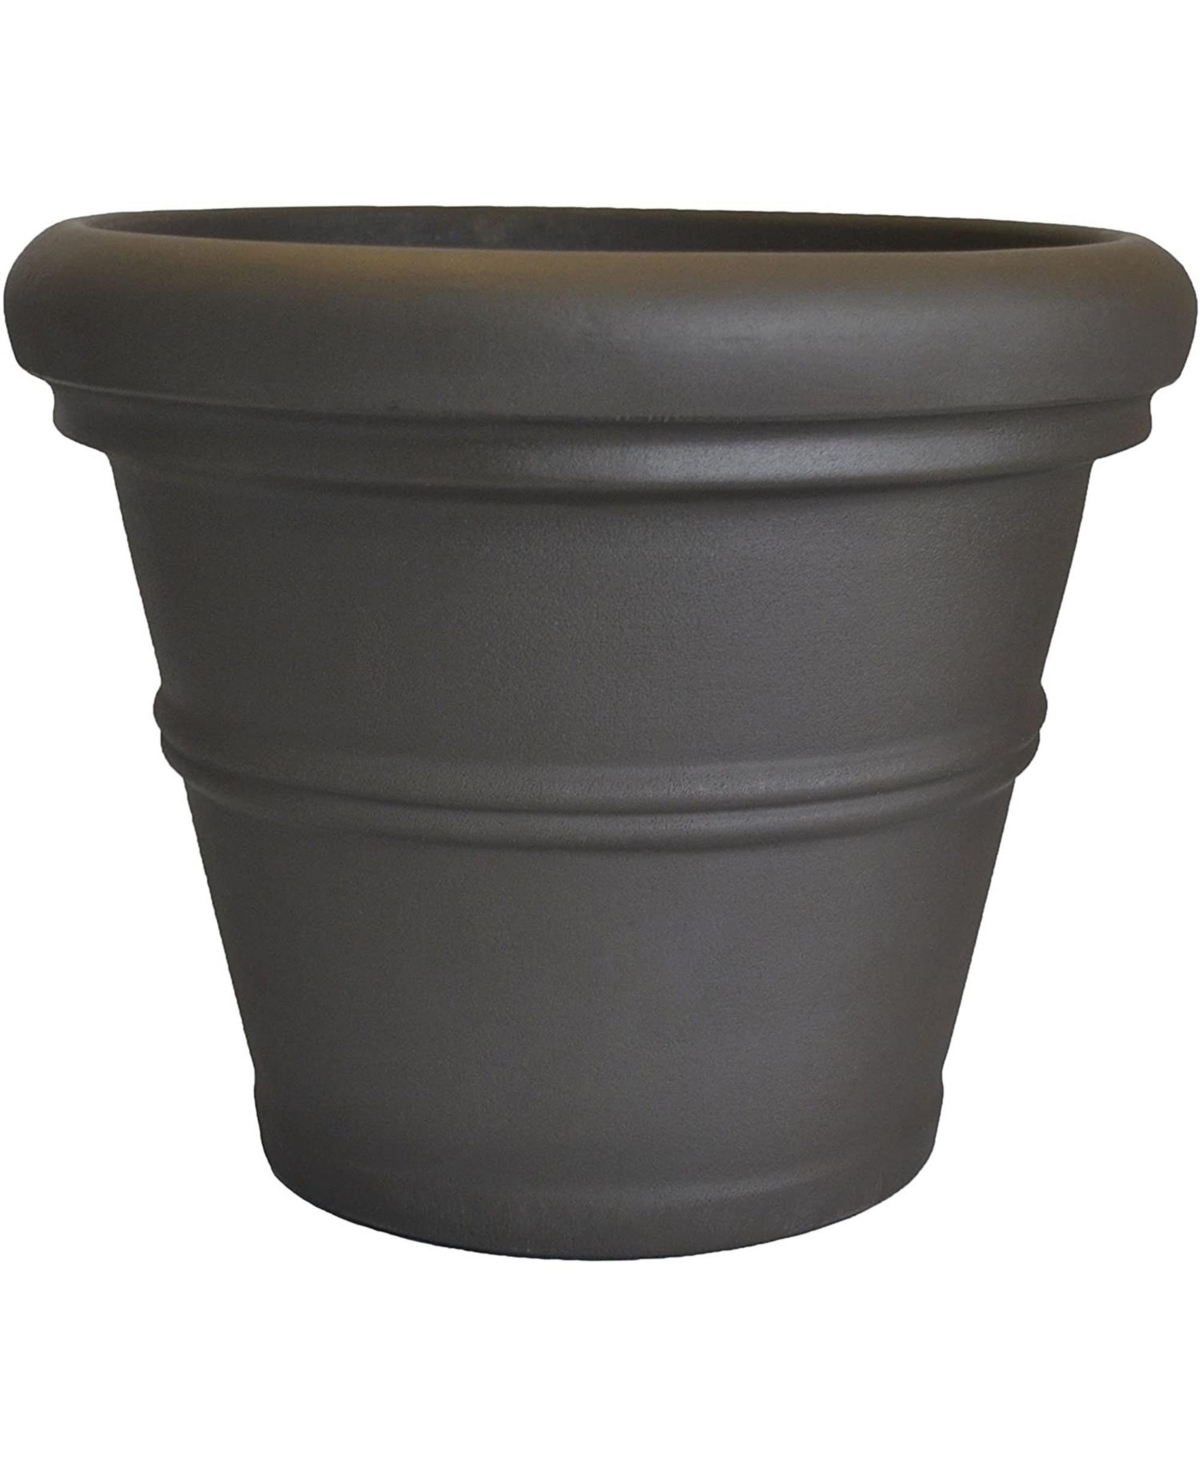 RR24ES Rolled Rim Garden Pot, Dark Espresso - Brown